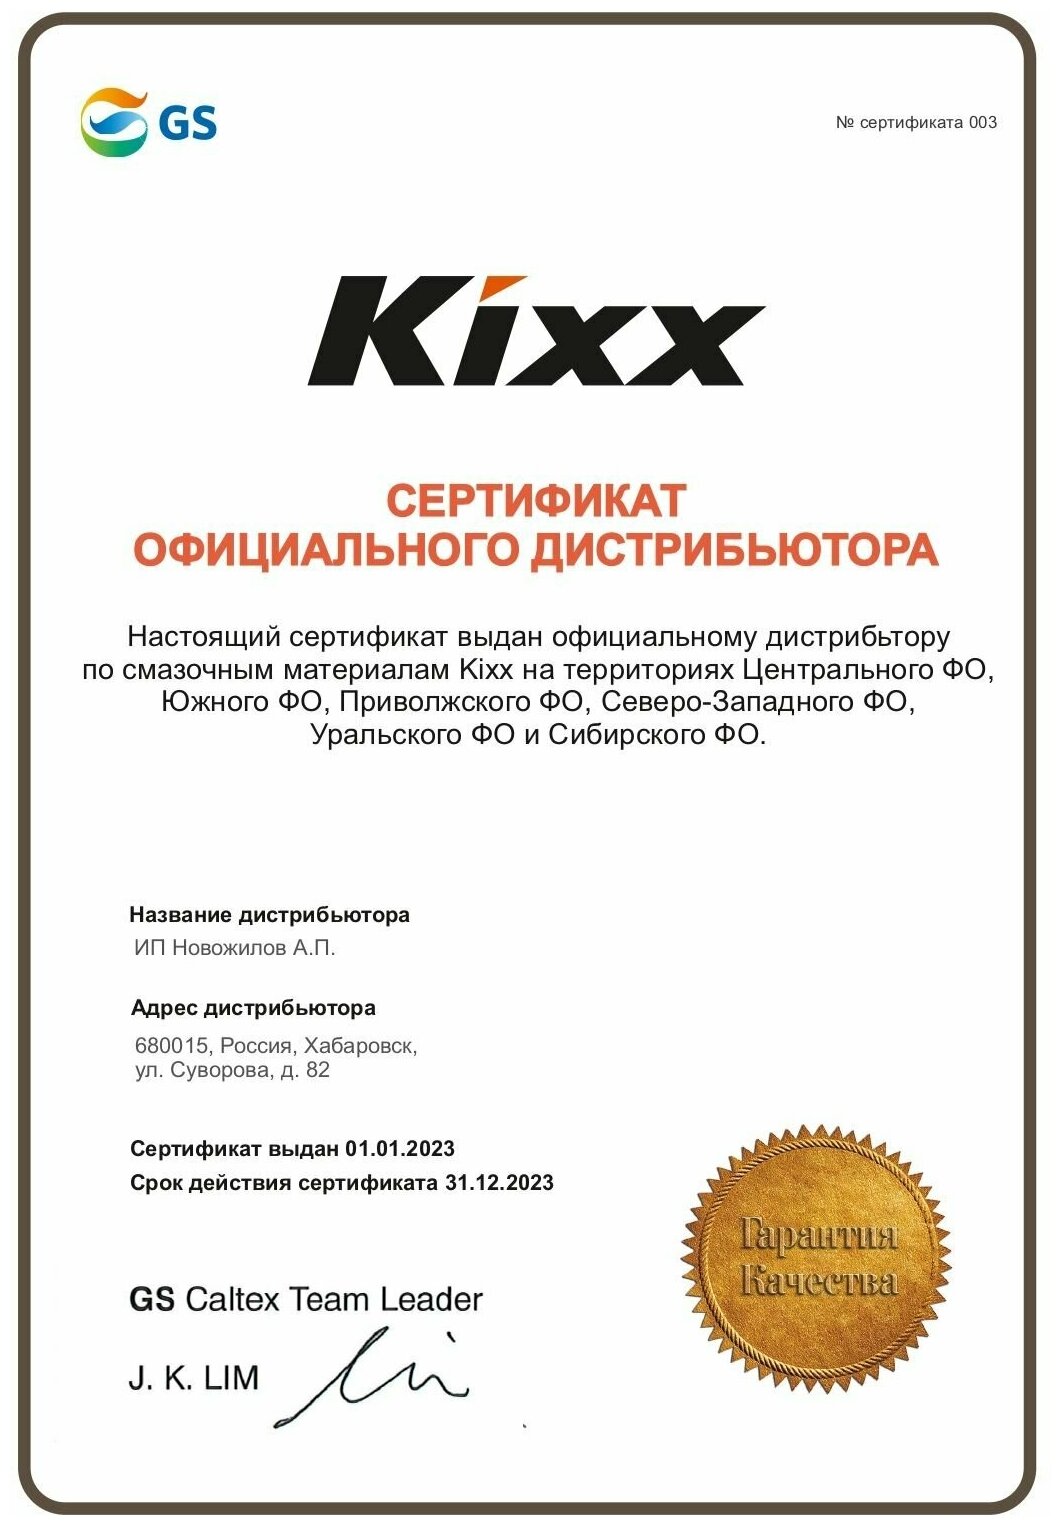 Масло трансмиссионное KIXX ATF DX-III 1л